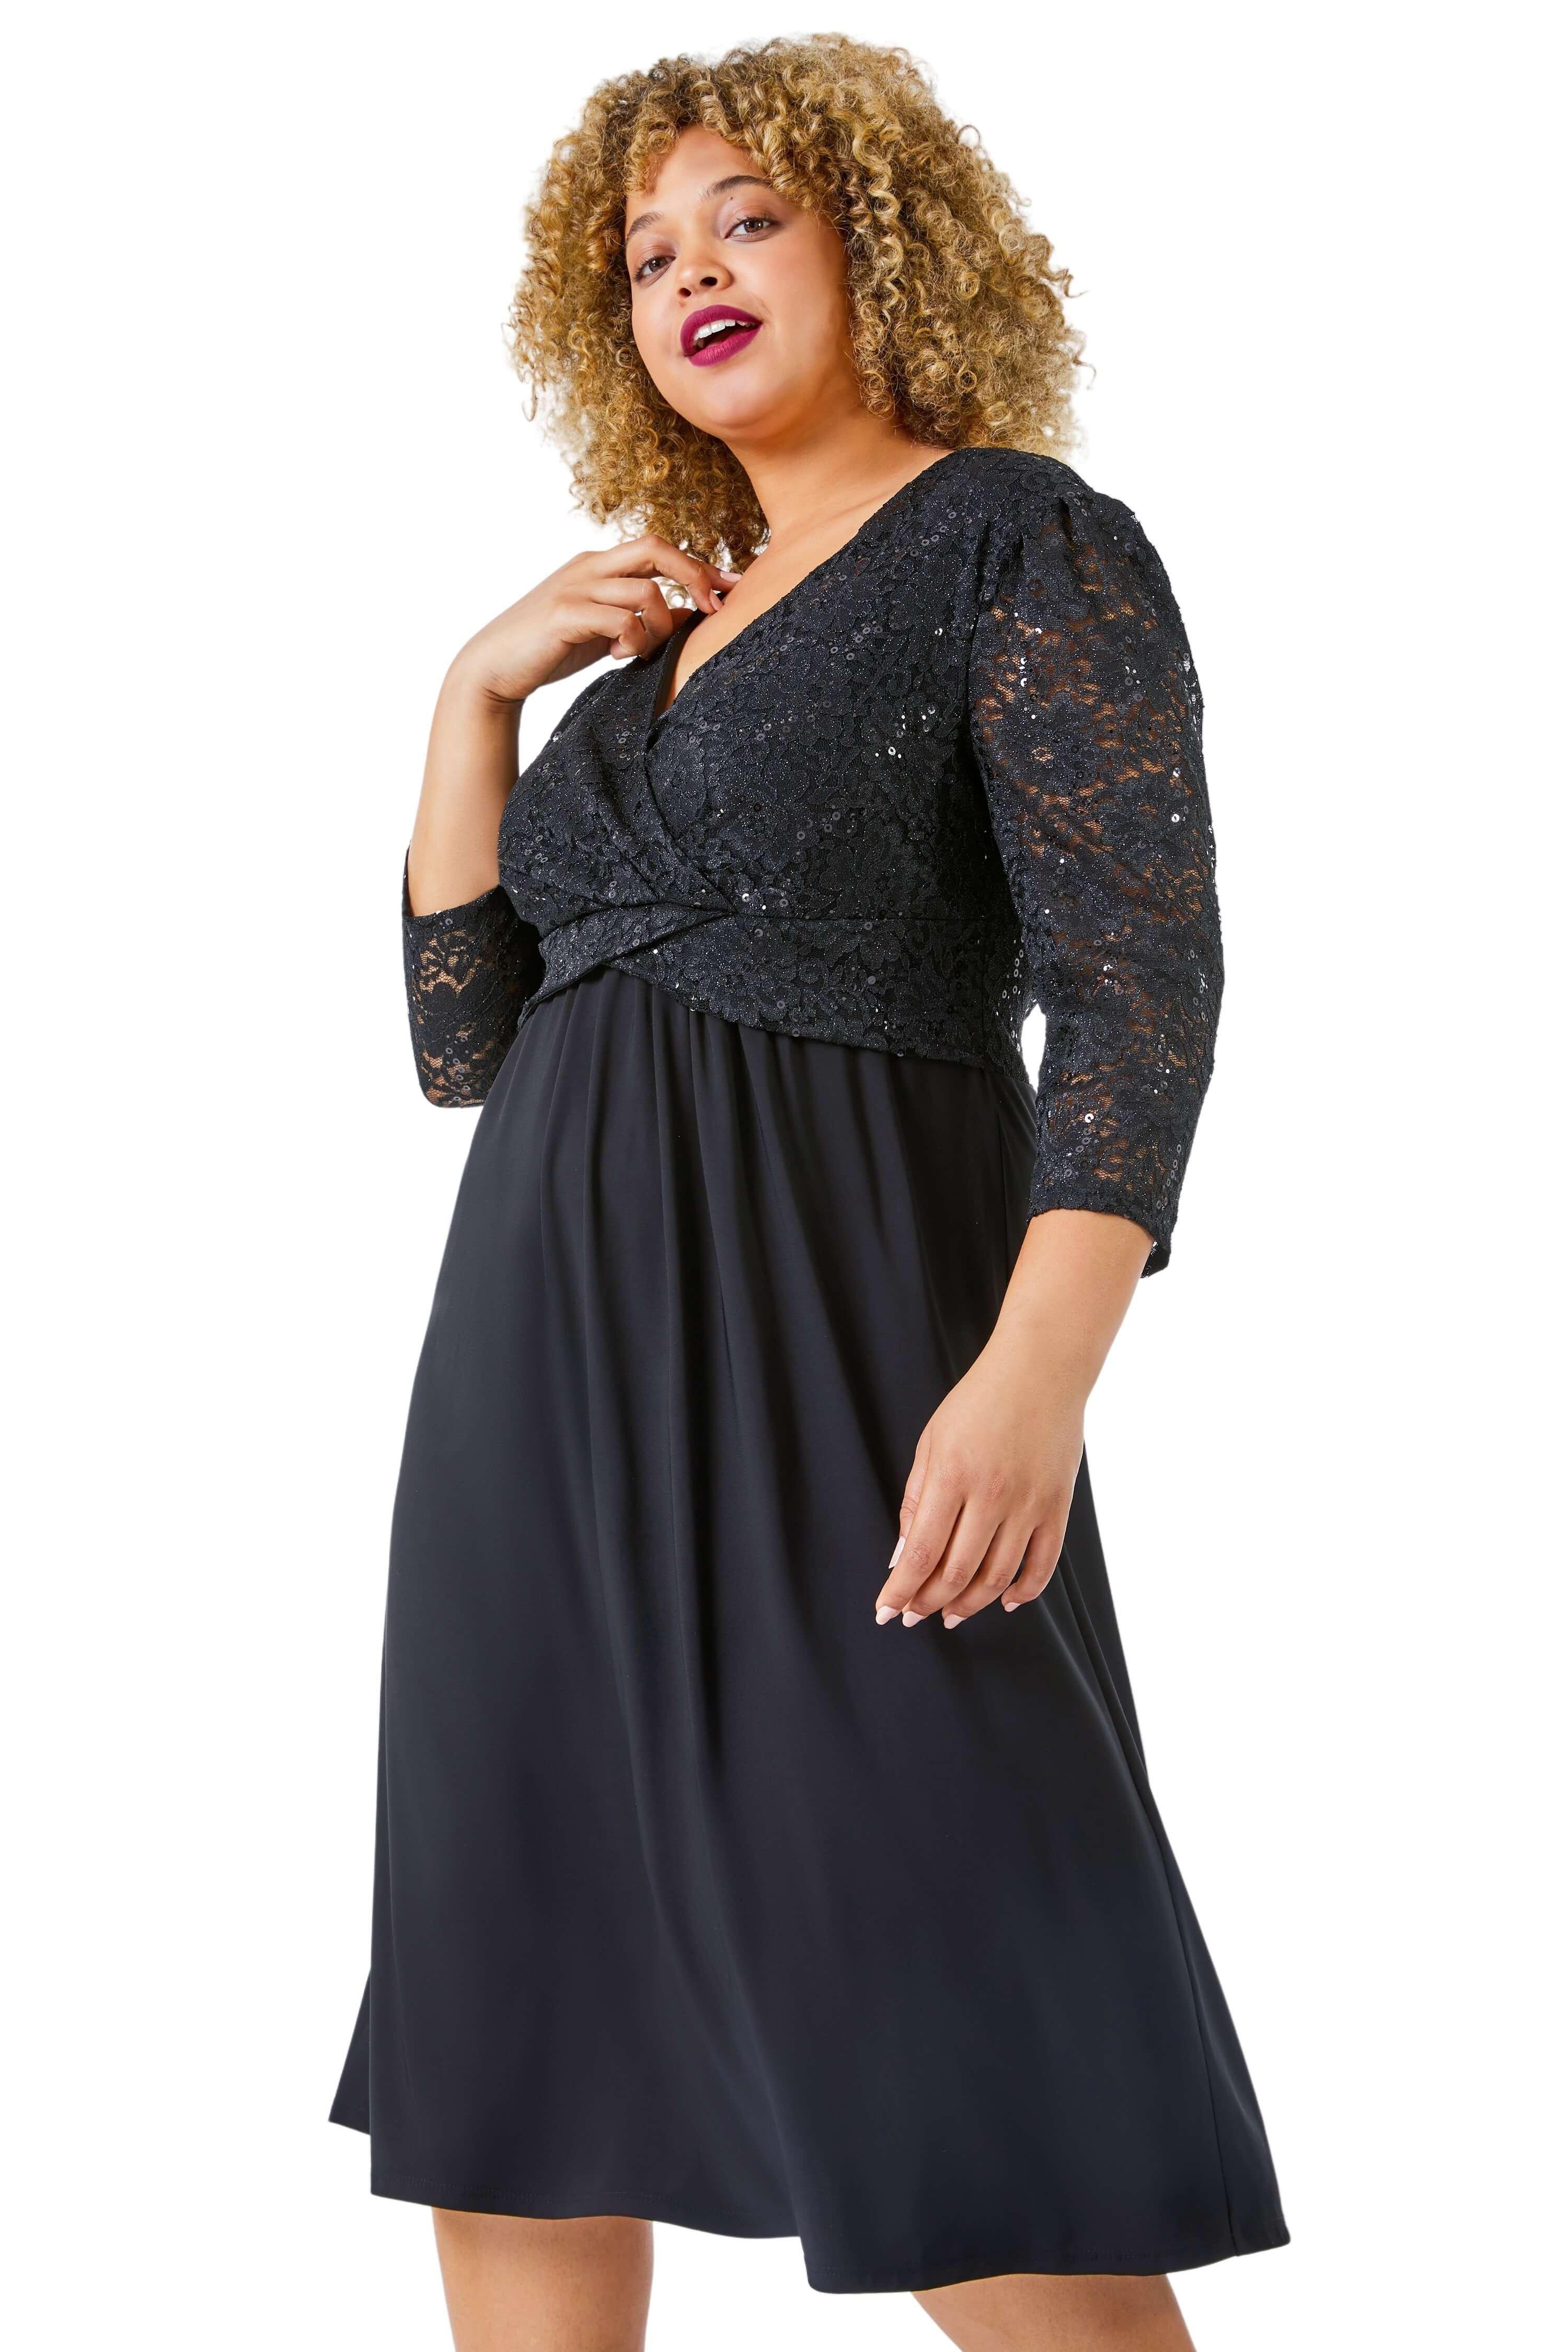 Кружевное платье с запахом и пайетками Curve Roman, черный фотографии